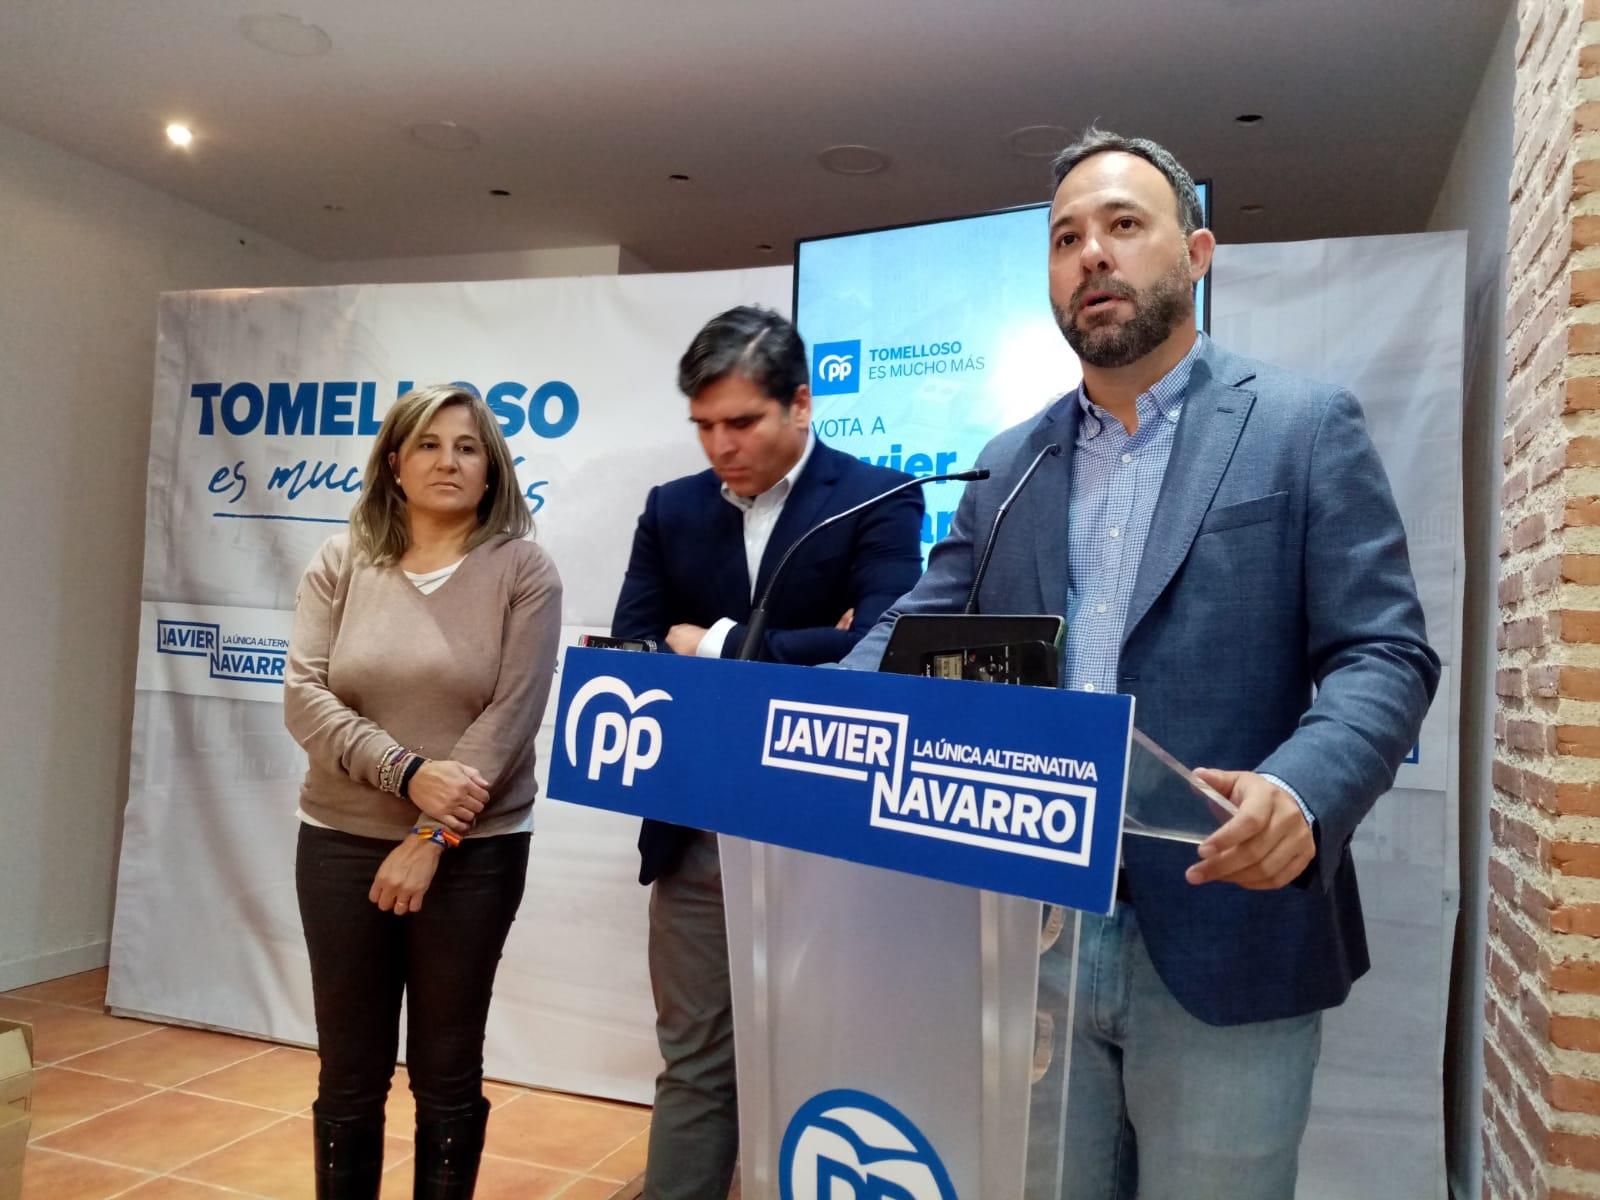 Javier Navarro, José Manuel Labrador y Eloisa Perales en la rueda de prensa